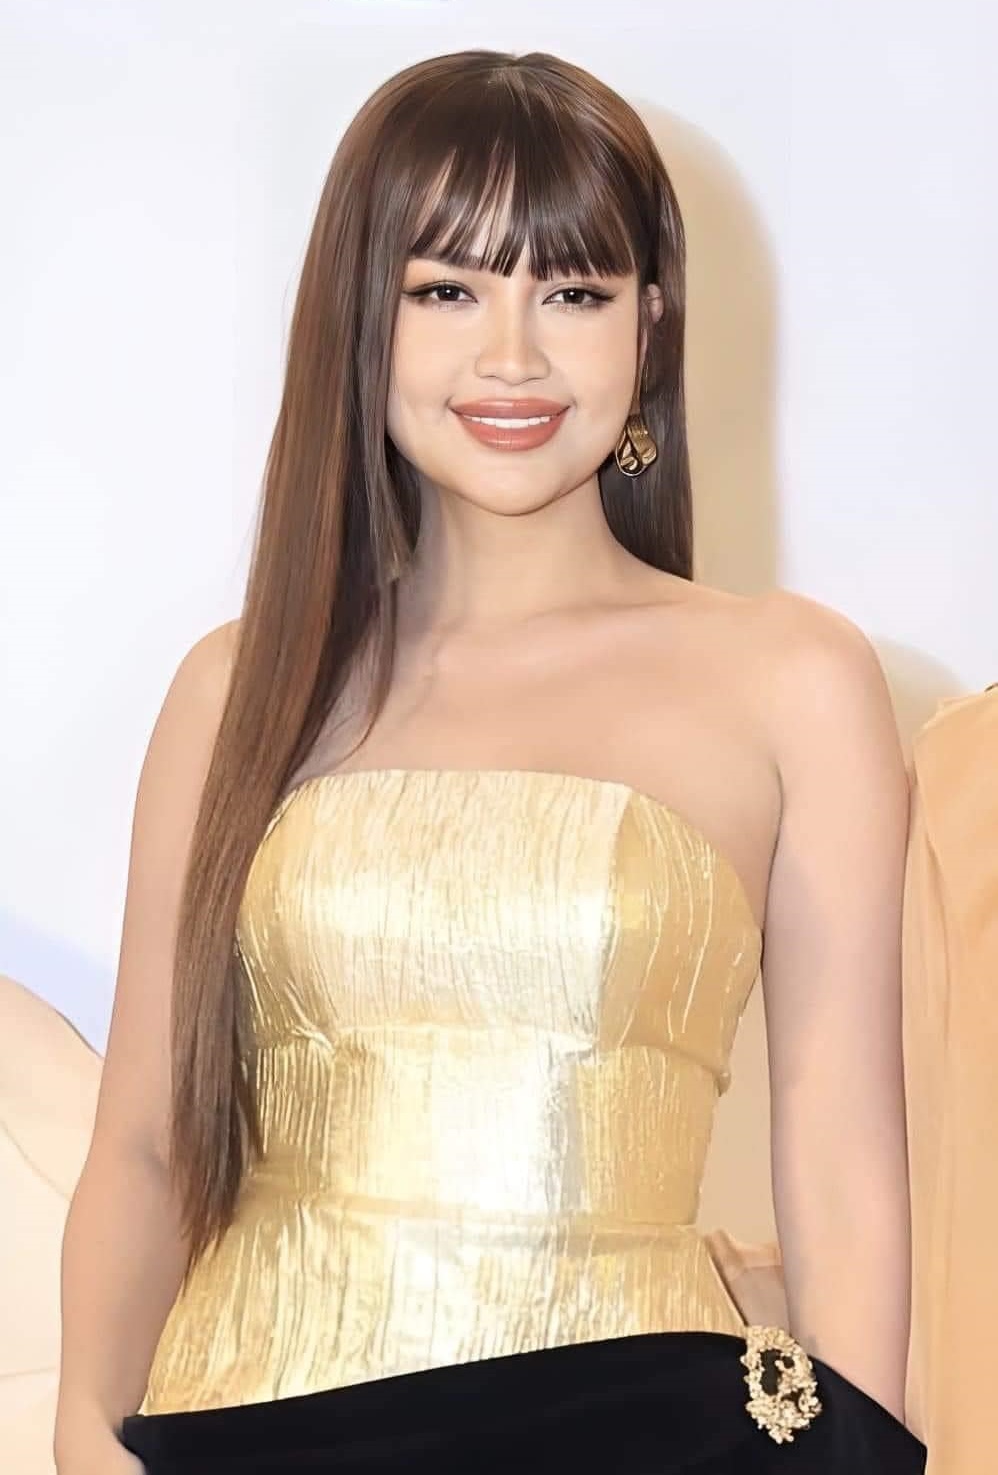 Nhan sắc thời Quán quân Vietnam's Next Top Model của Hoa hậu Ngọc Châu gây tiếc nuối? - ảnh 1